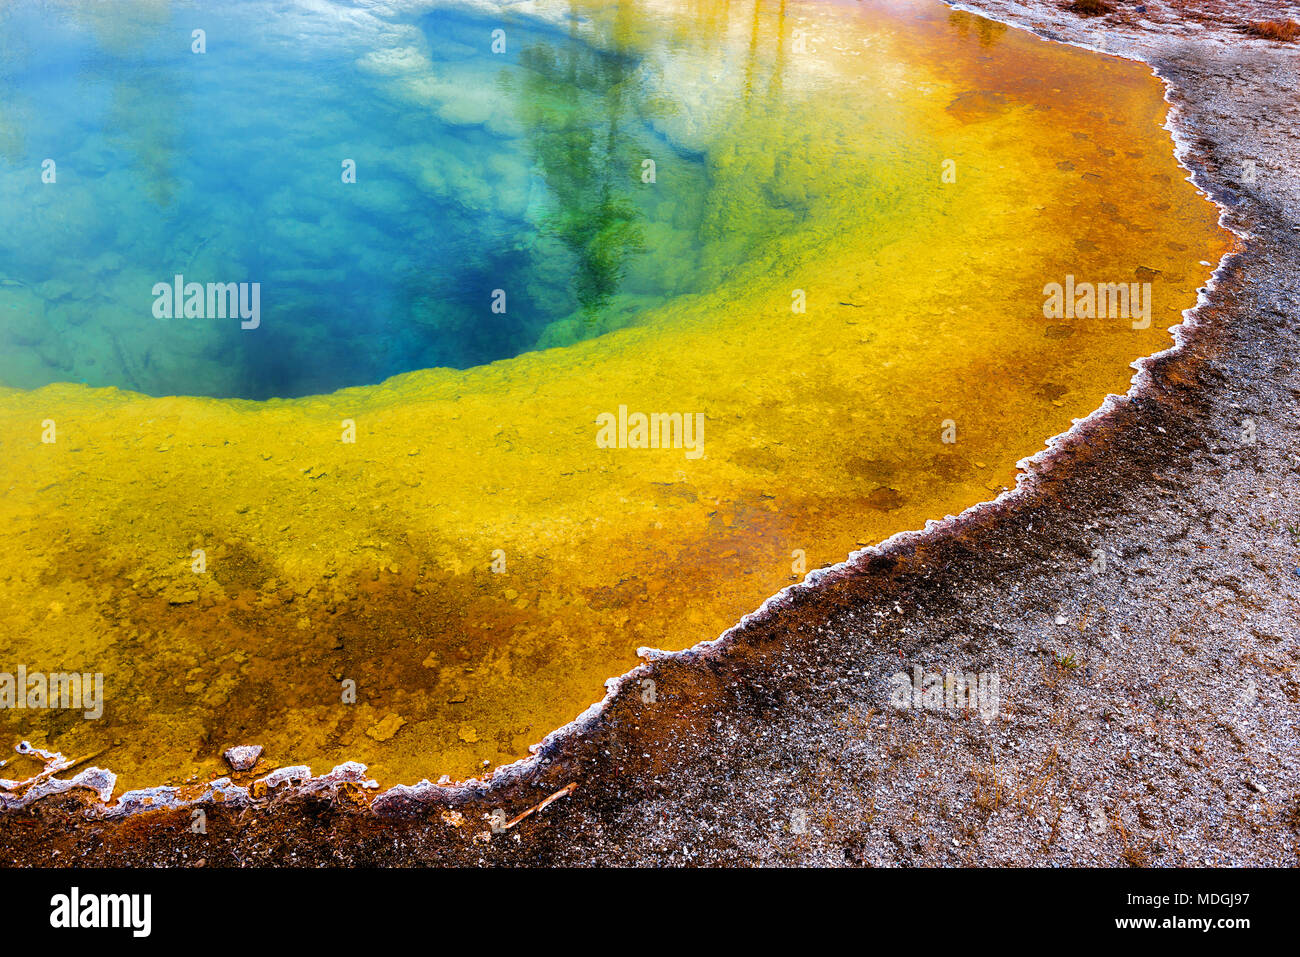 In der Nähe des magischen Farben des Morning Glory Pool durch Algen und Temperatur unterschied in der Yellowstone National Park, Wyoming, USA verursacht. Stockfoto